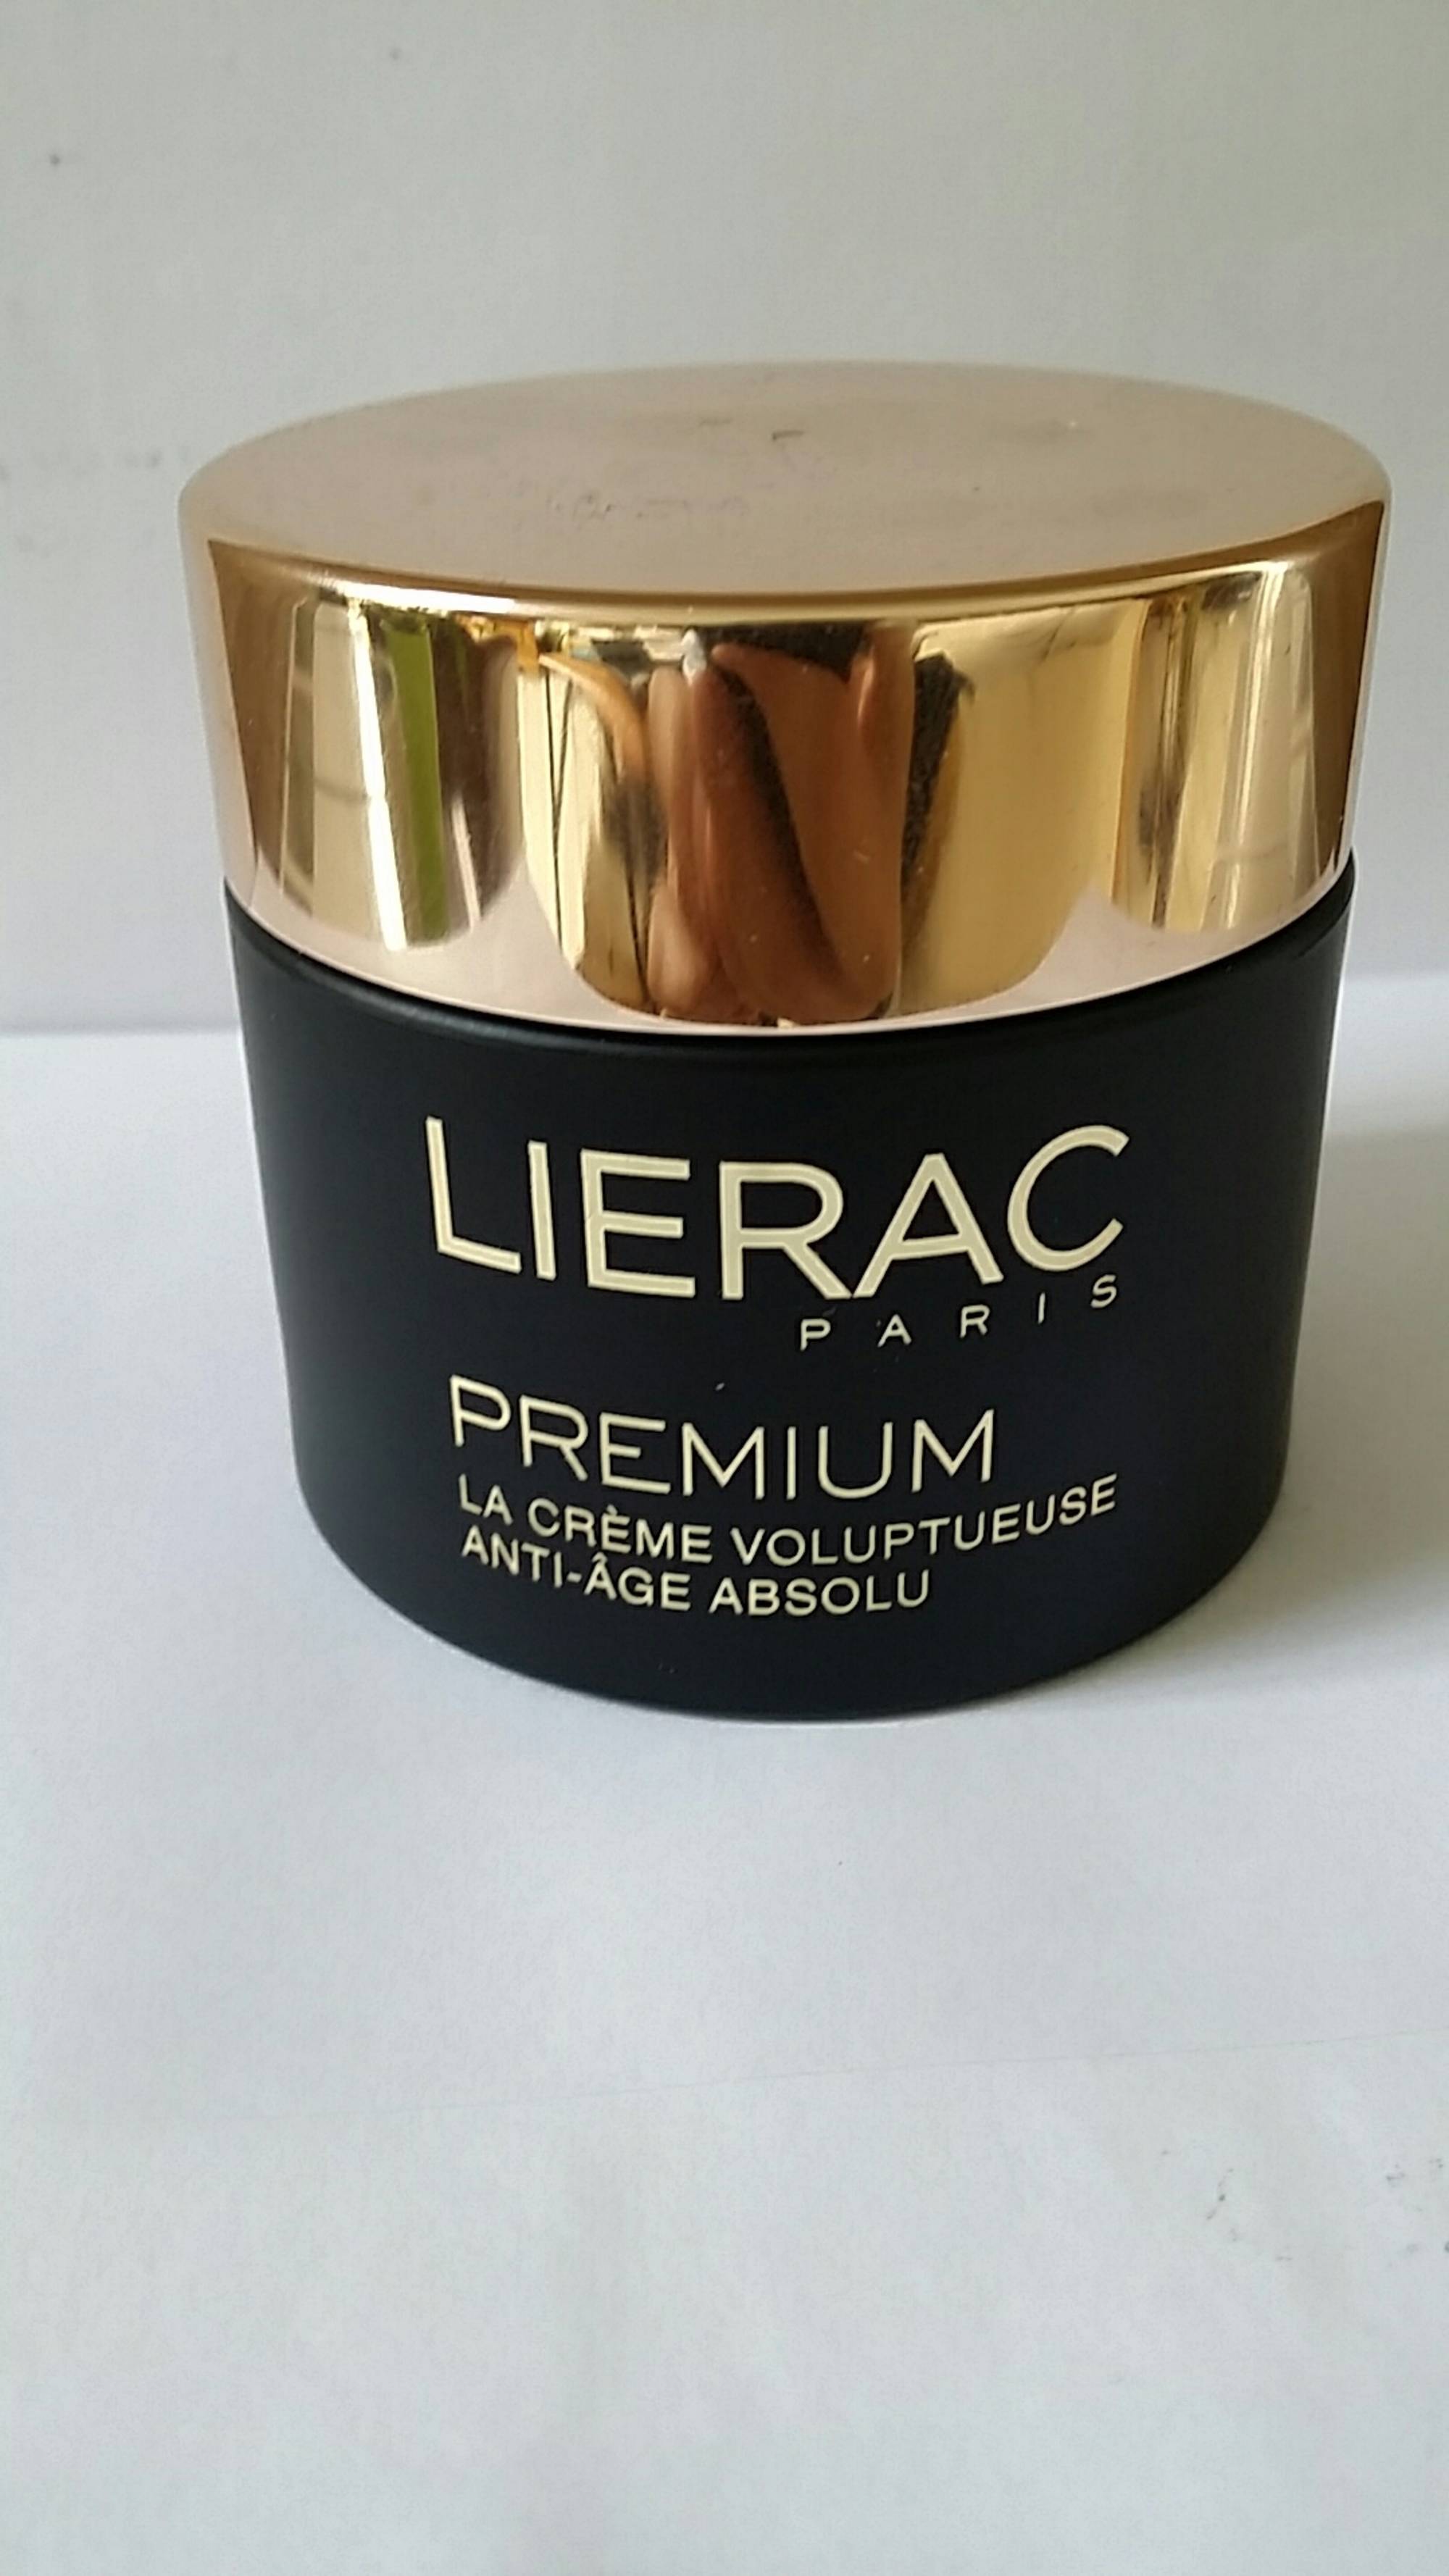 LIÉRAC - Premium - La crème voluptueuse anti-âge absolu